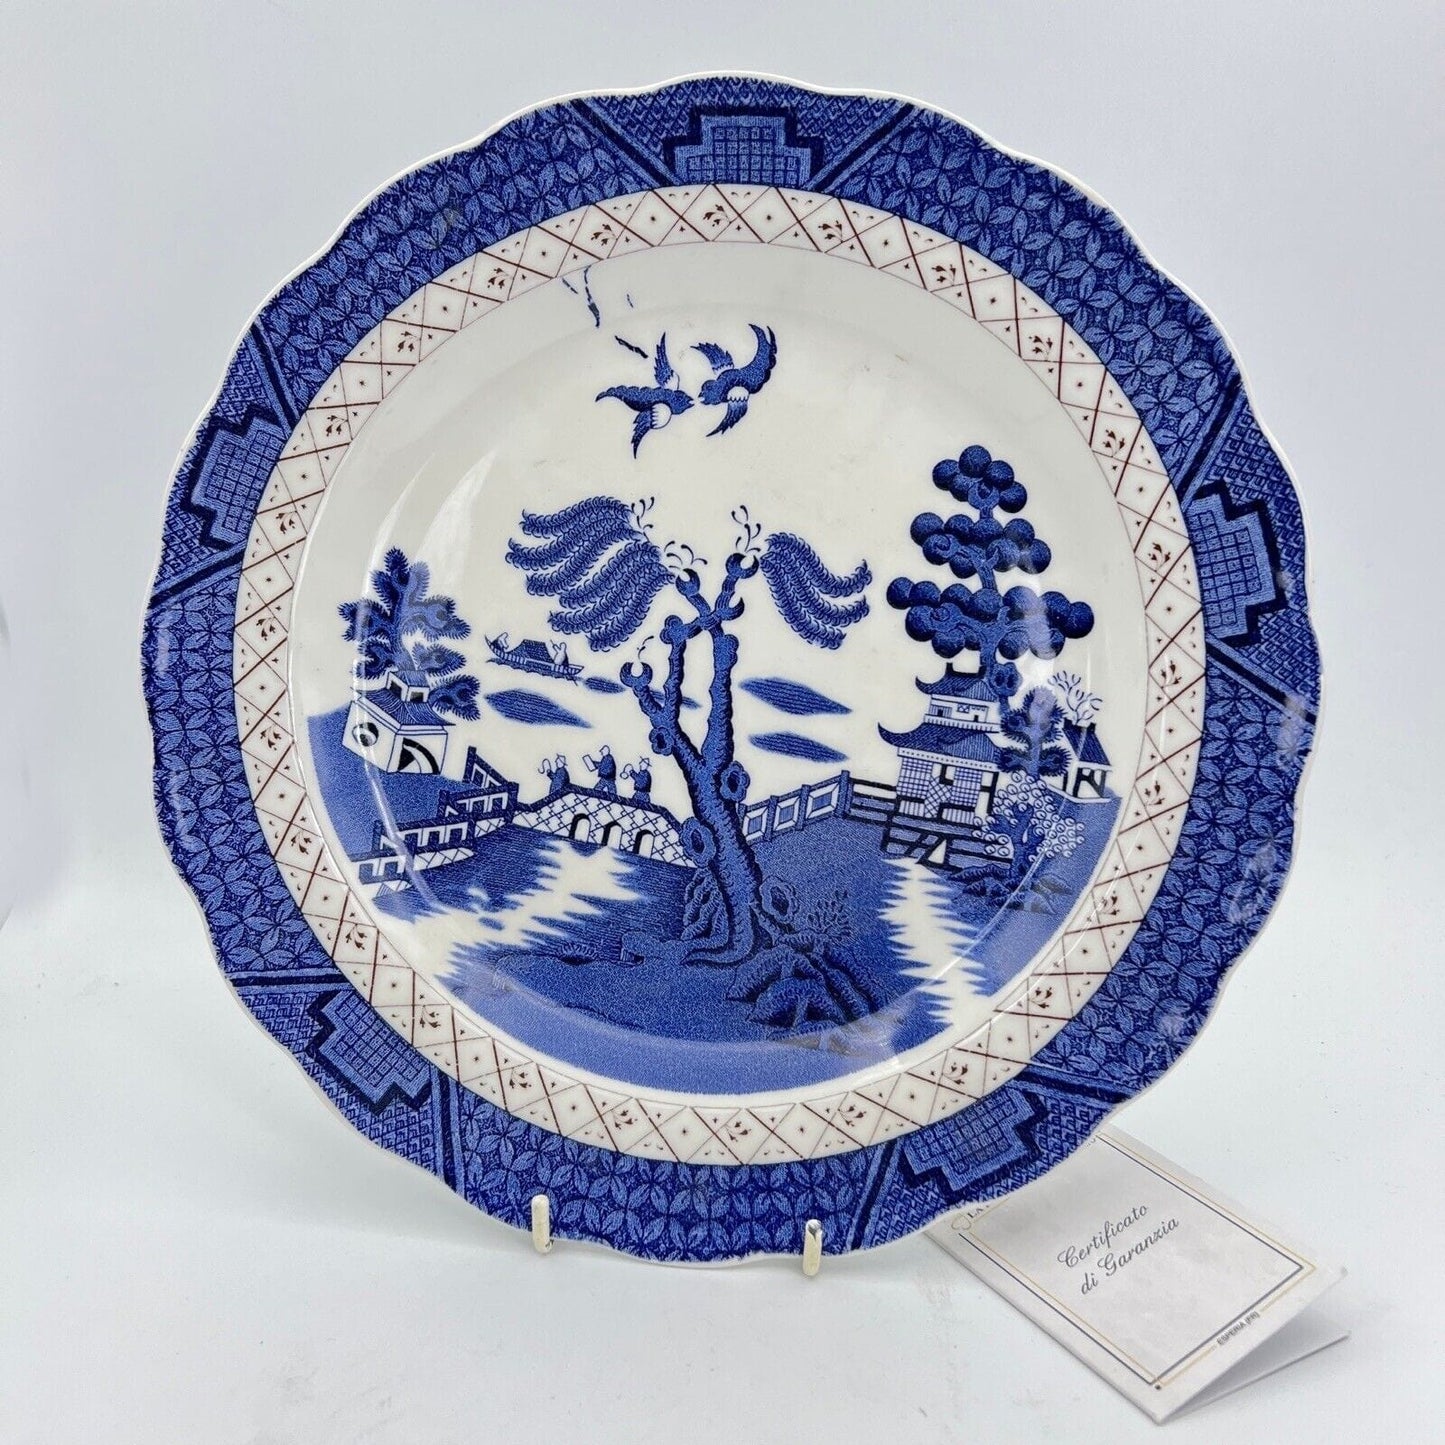 Piatto vintage in ceramica inglese royal doulton bianco blu Serie old Willow Categoria  Piatti e Piattini